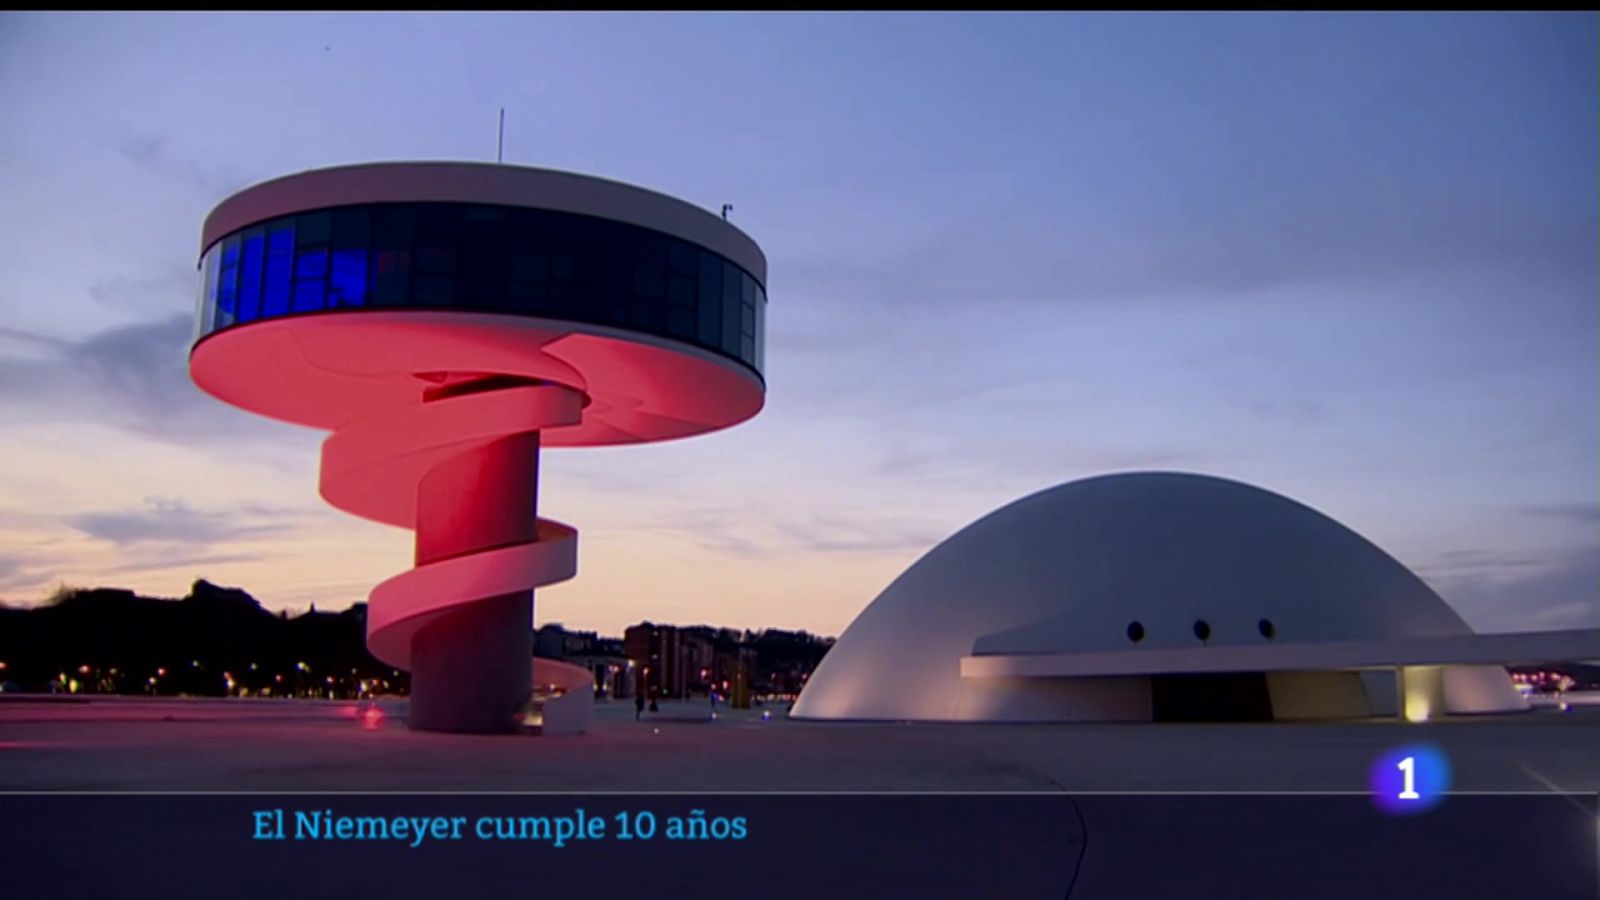 Oscar Niemeyer calificó el Centro Cultural de Aviles como la obra más importante fuera de Brasil.